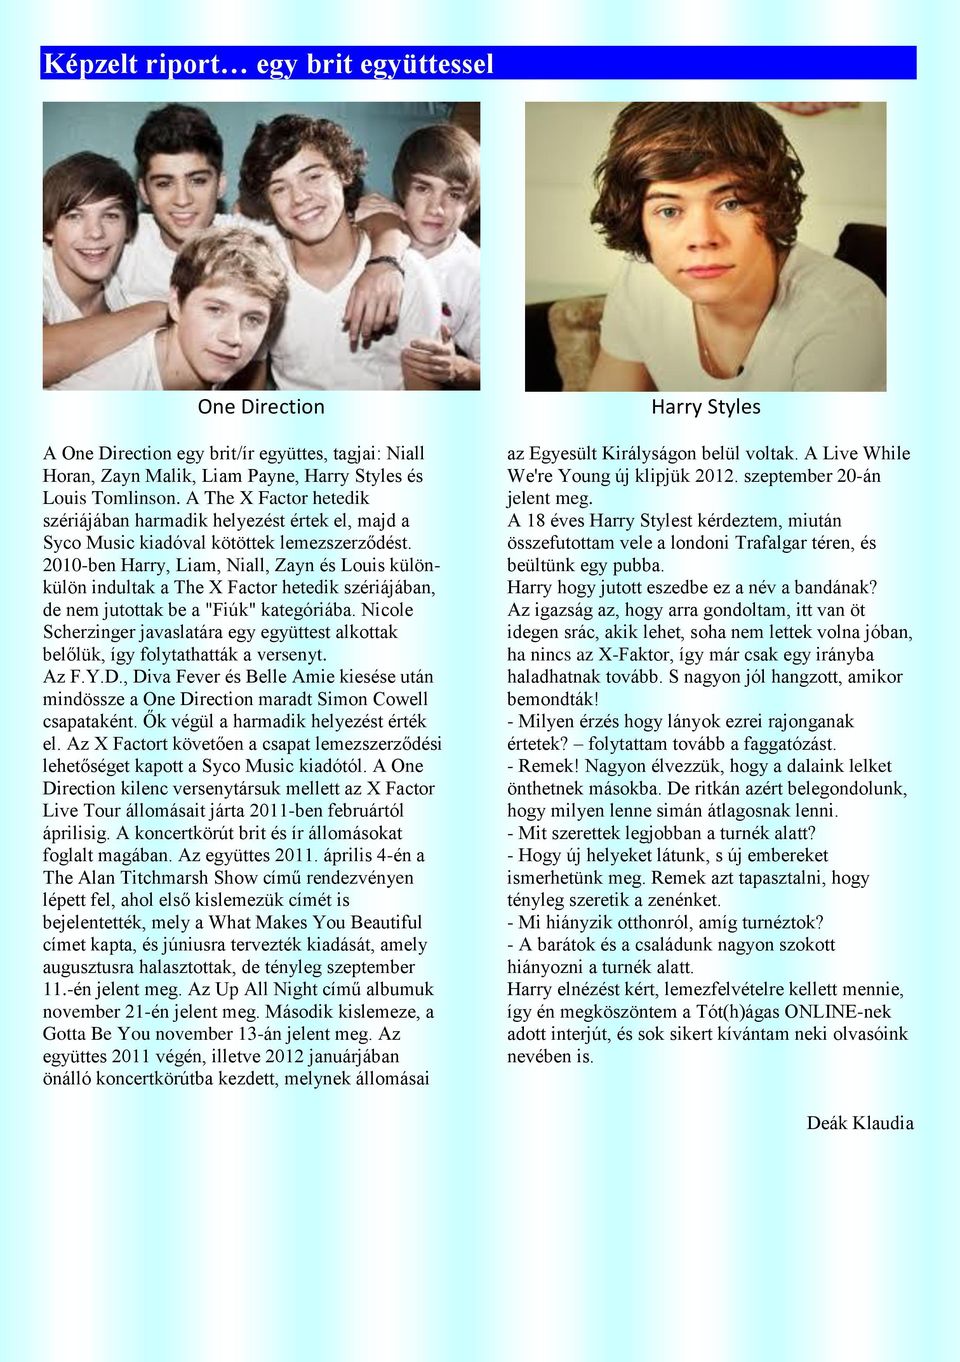 2010-ben Harry, Liam, Niall, Zayn és Louis különkülön indultak a The X Factor hetedik szériájában, de nem jutottak be a "Fiúk" kategóriába.